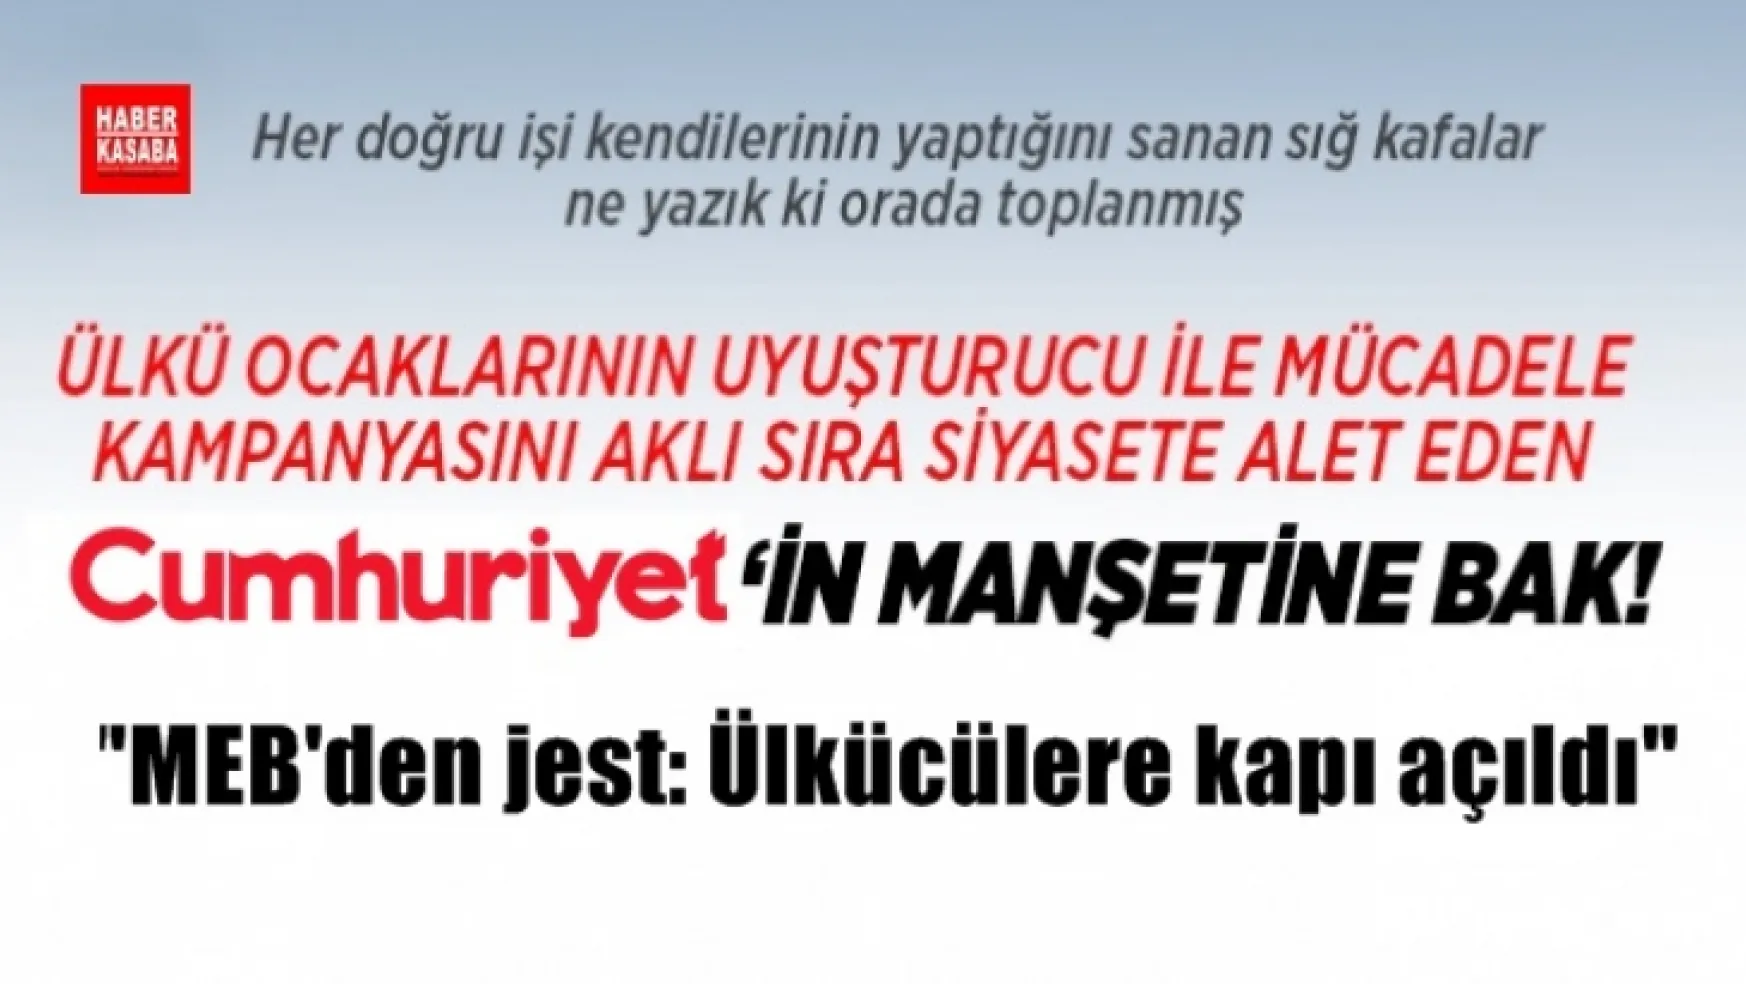 Cumhuriyet Gazetesi'nin taraflı Ülkü Ocakları haberi yuh artık dedirtti